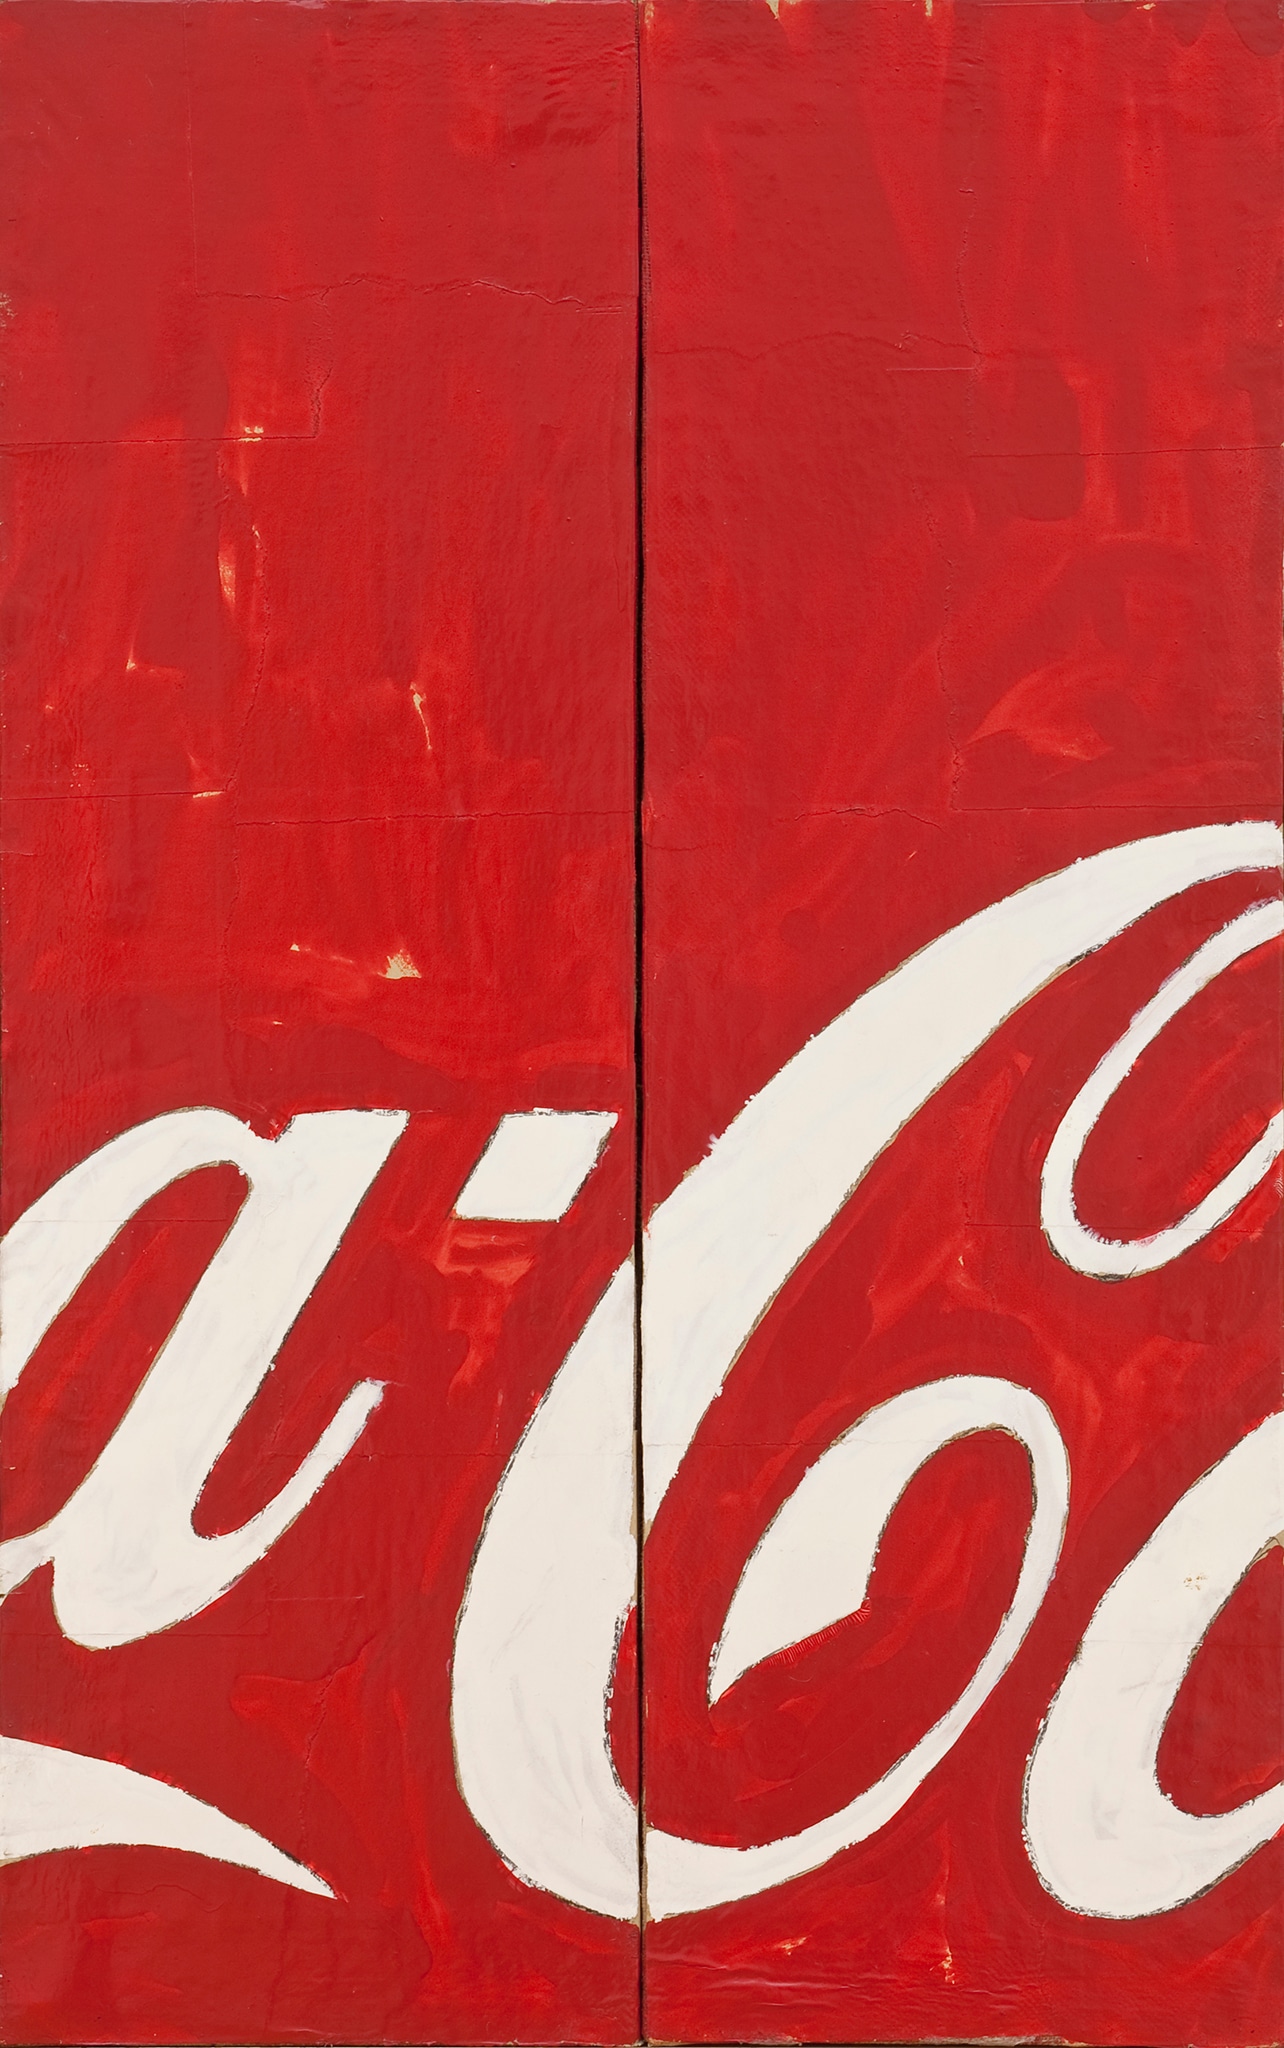 Mario Schifano - Coca Cola (particolare), 1962 - Smalto su carta intelata - cm 81,5 x 52 - MAMbo, Collezione permanente. Foto Matteo Monti